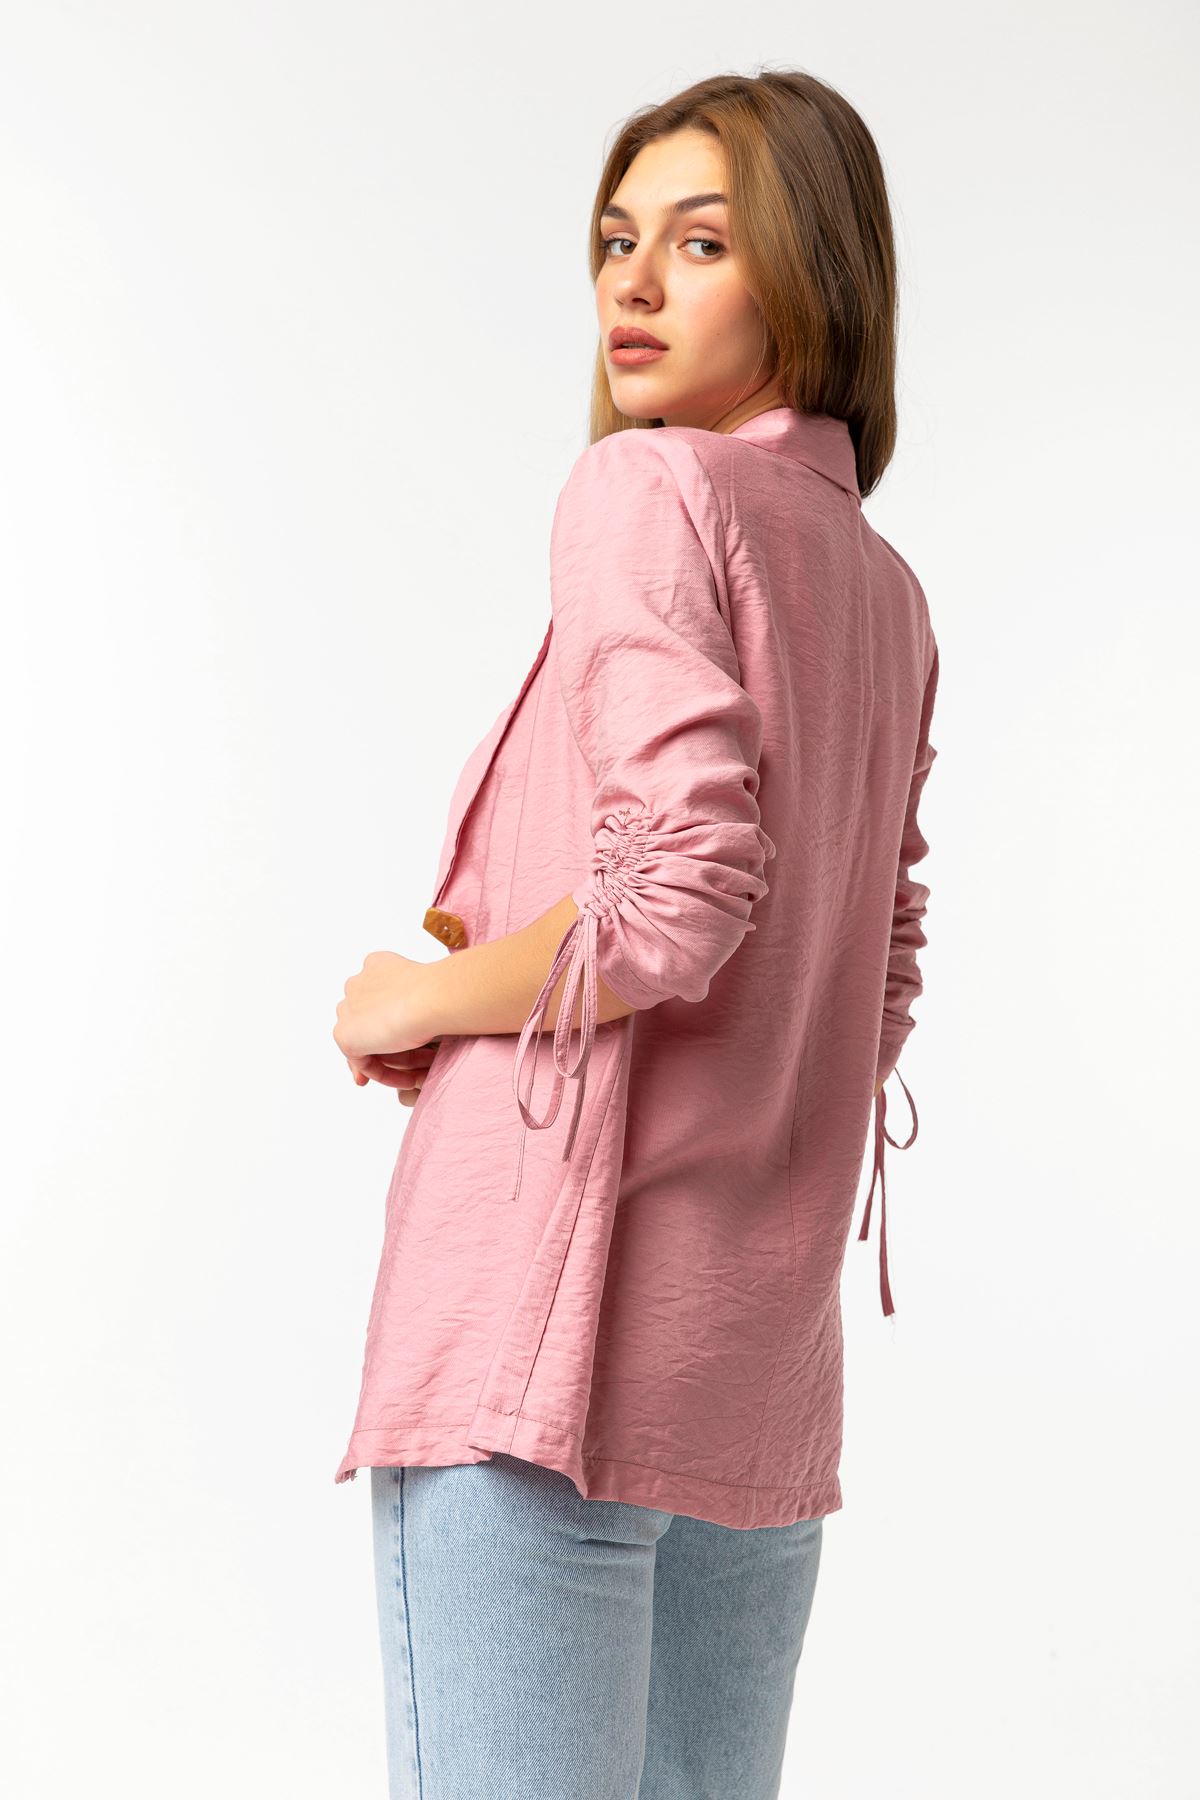 Аэробин Ткань ревер воротник высота бедра свободный женский пиджак - Светло розовый